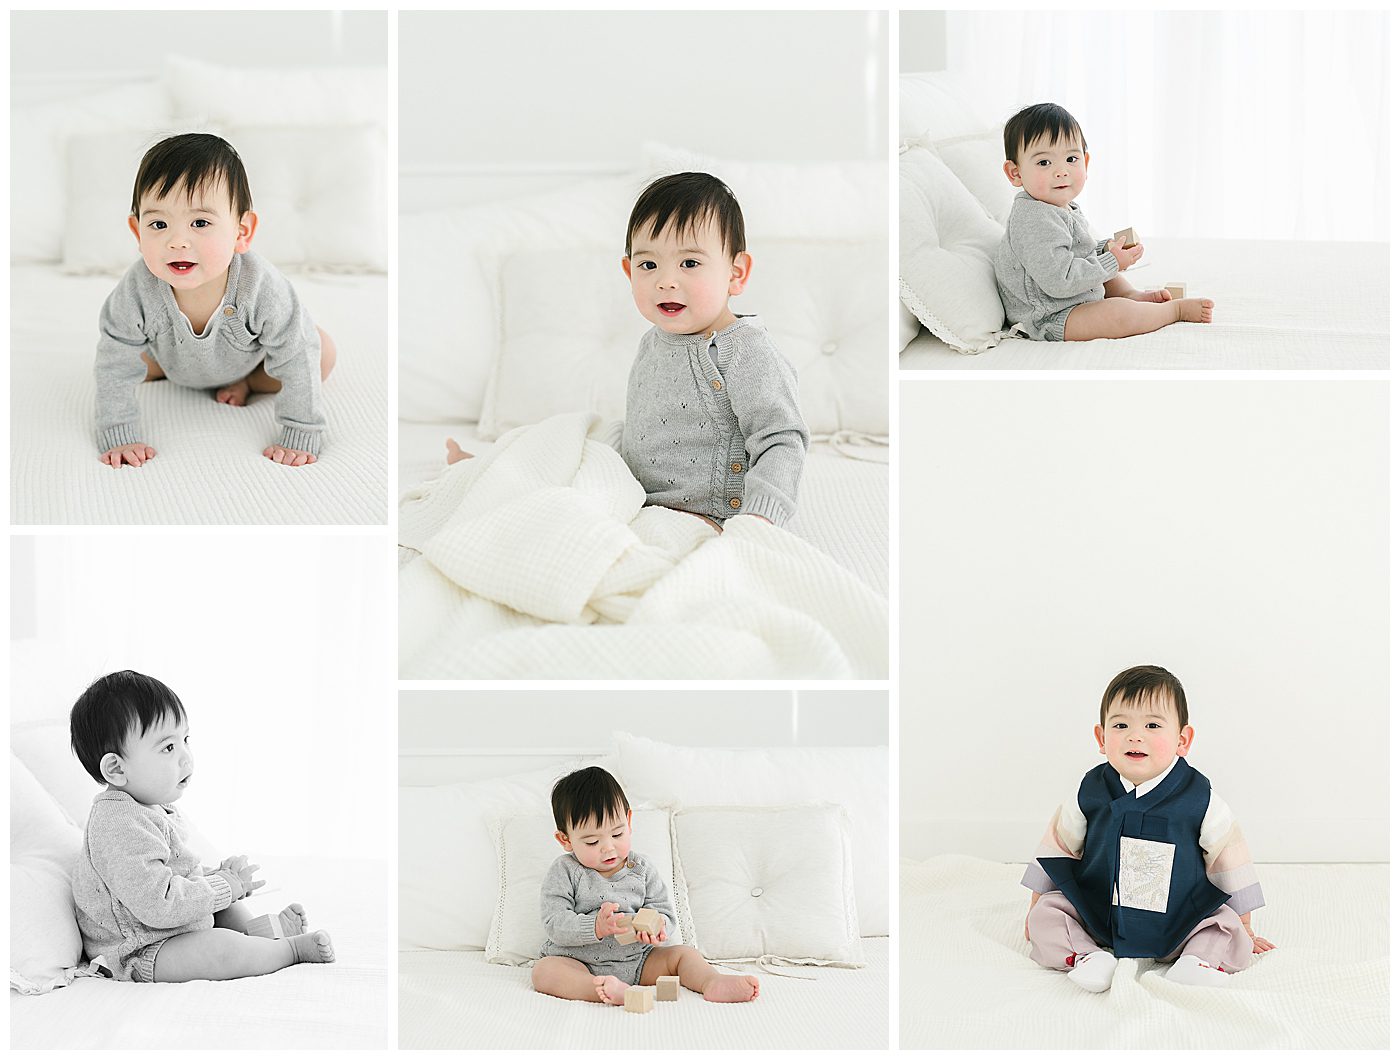 one year old baby boy on white bedding in Korean hanbok